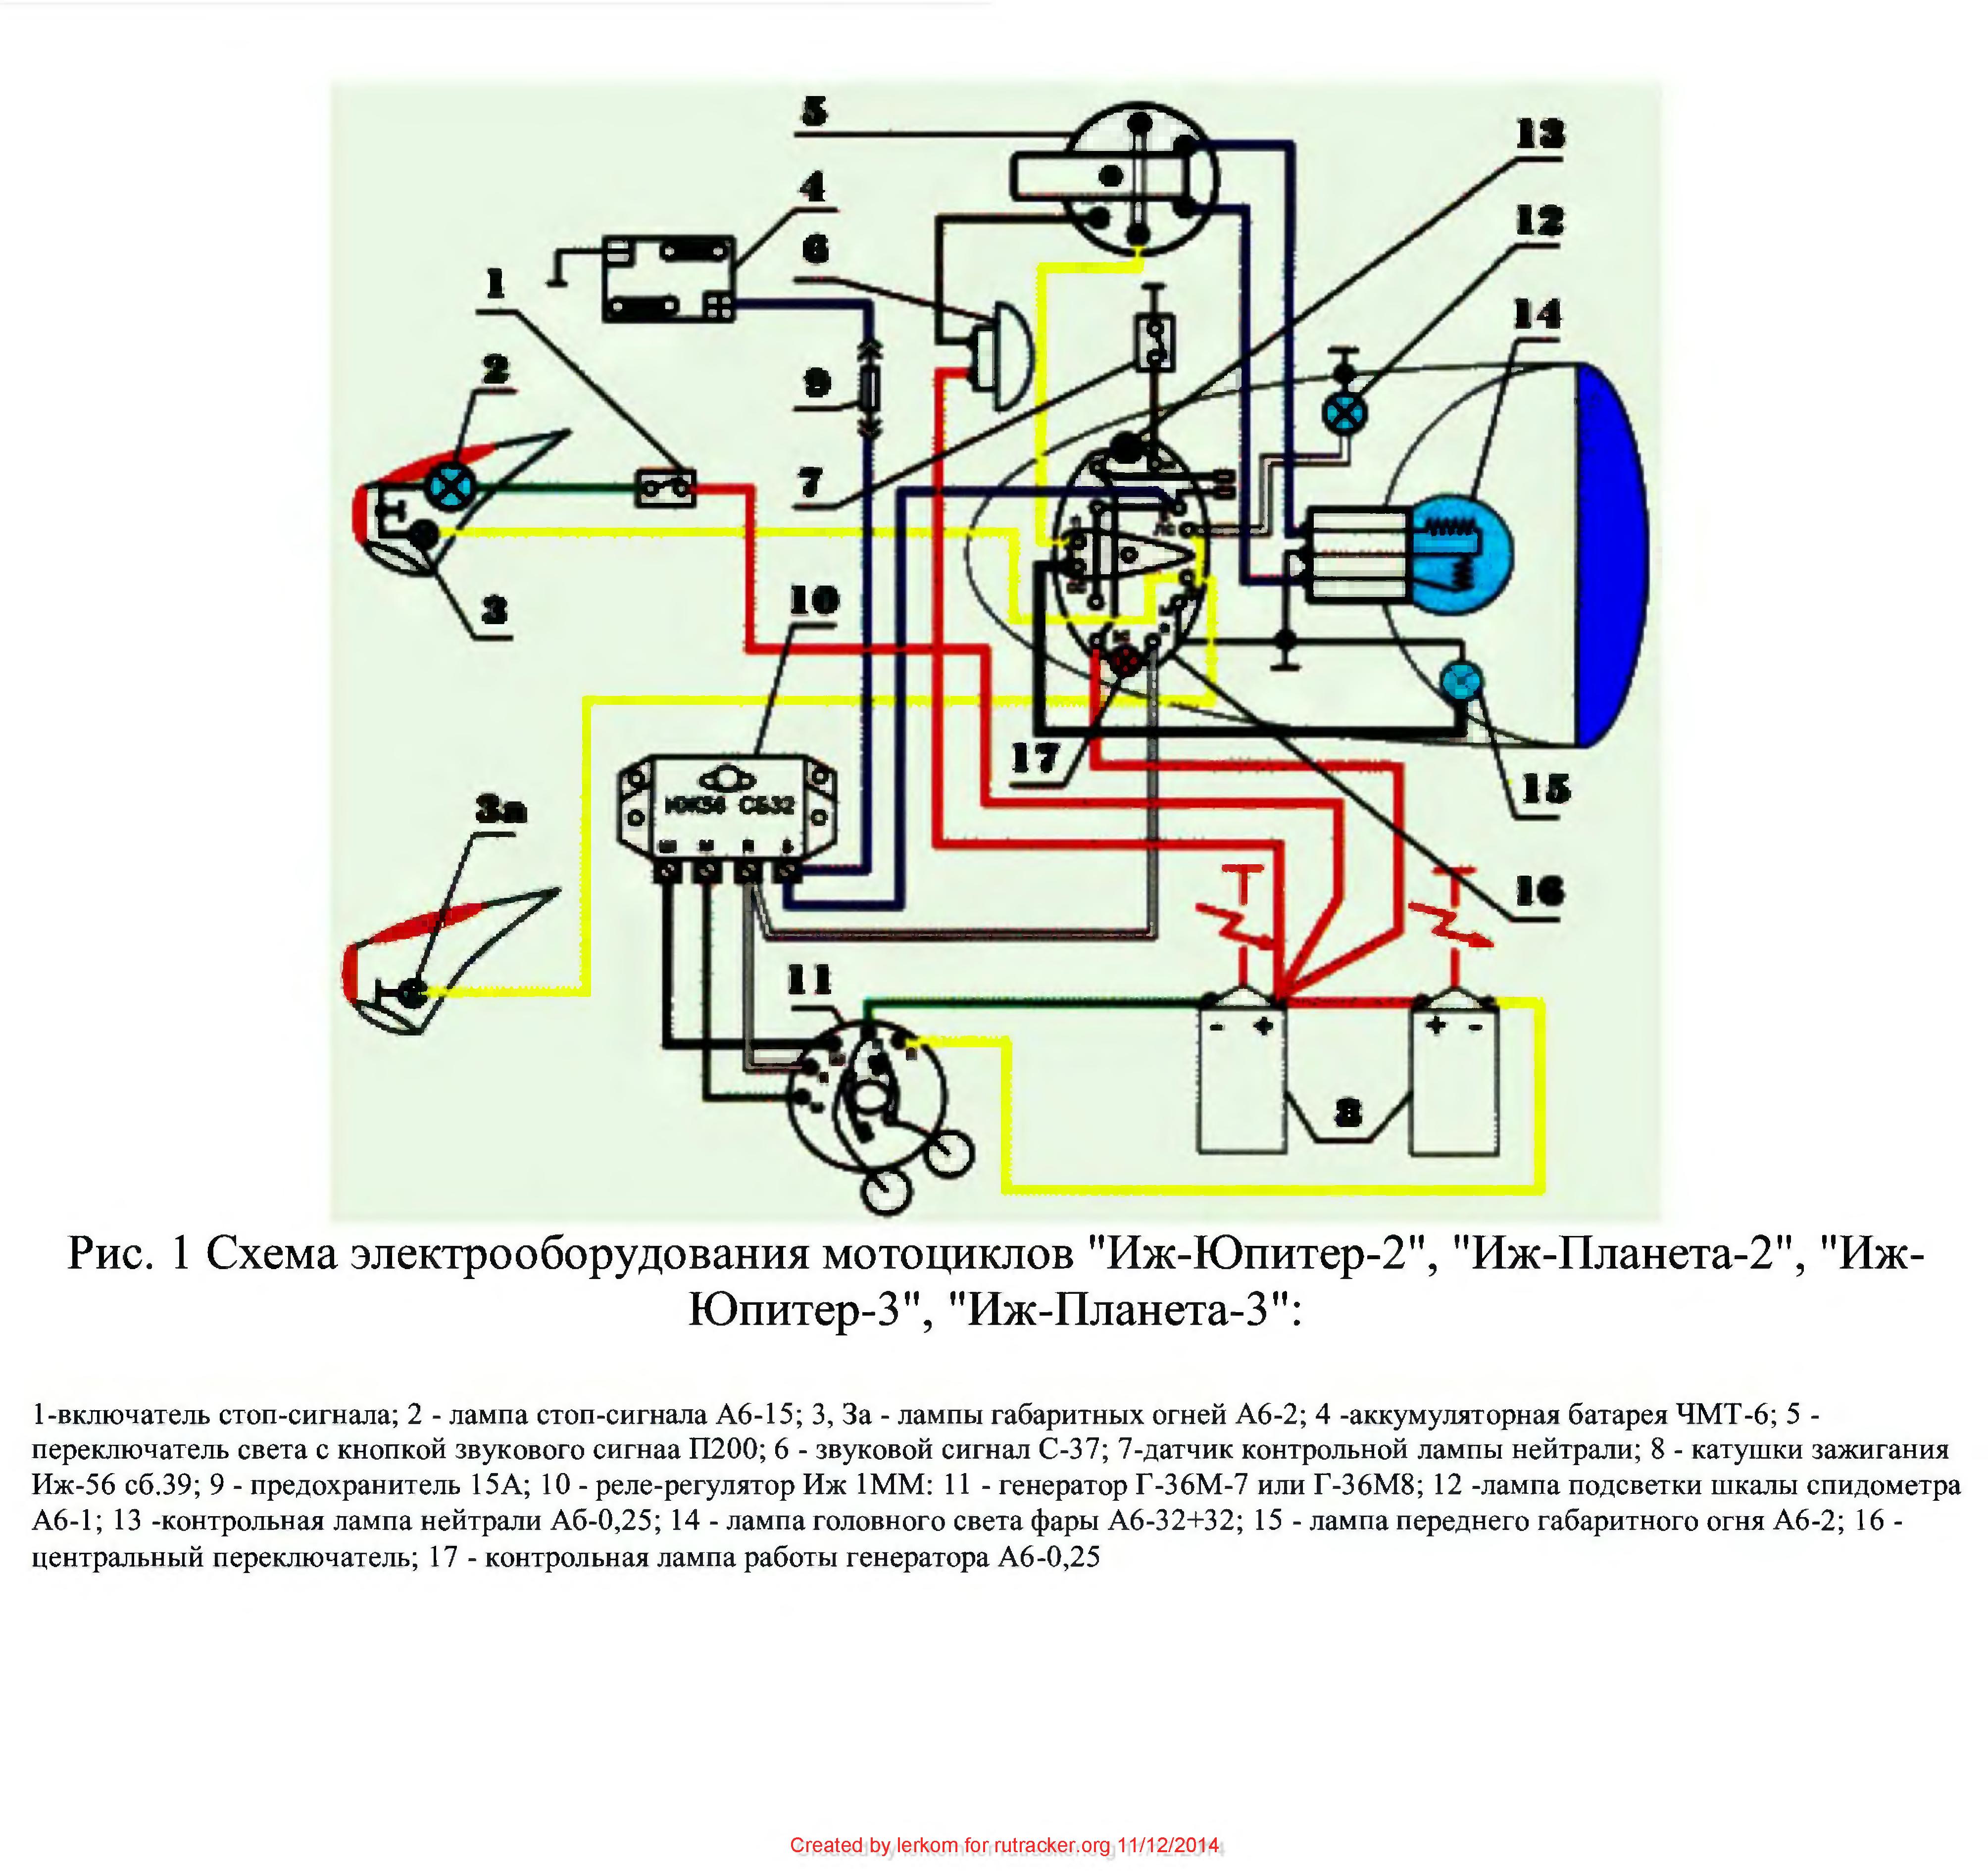 Подробная схема проводки ИЖ Юпитер 4 и ее модернизация